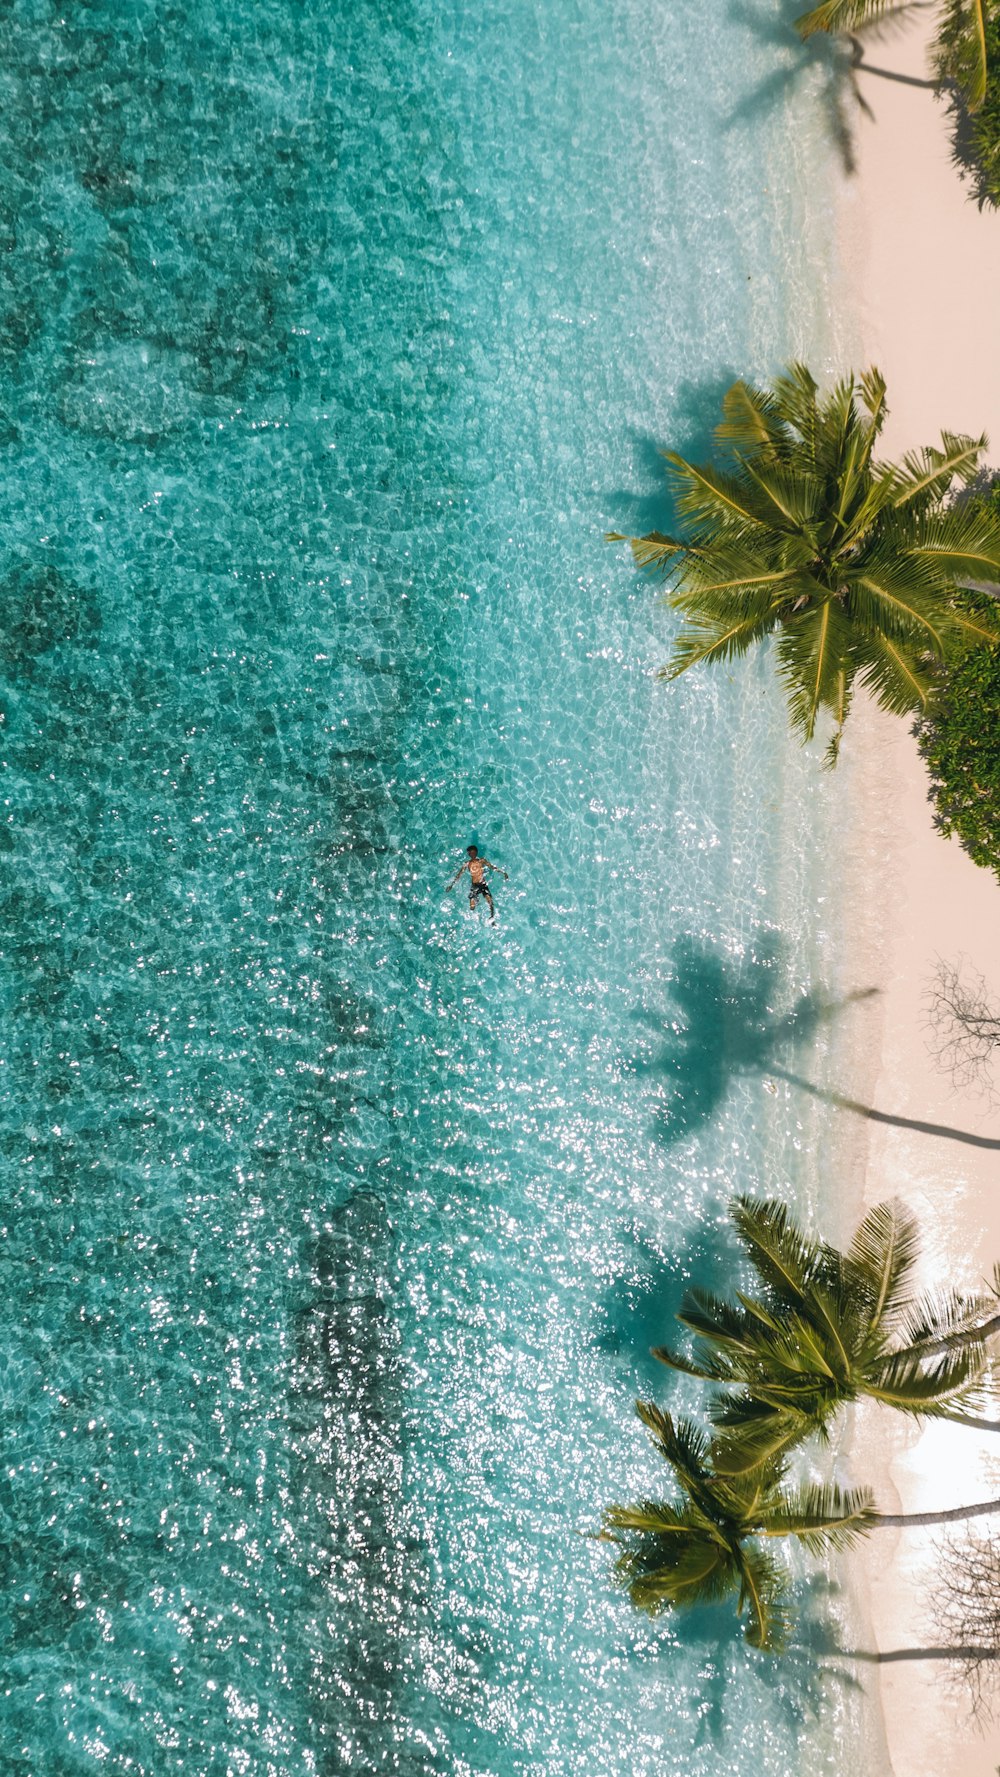 una persona en un cuerpo de agua rodeado de palmeras